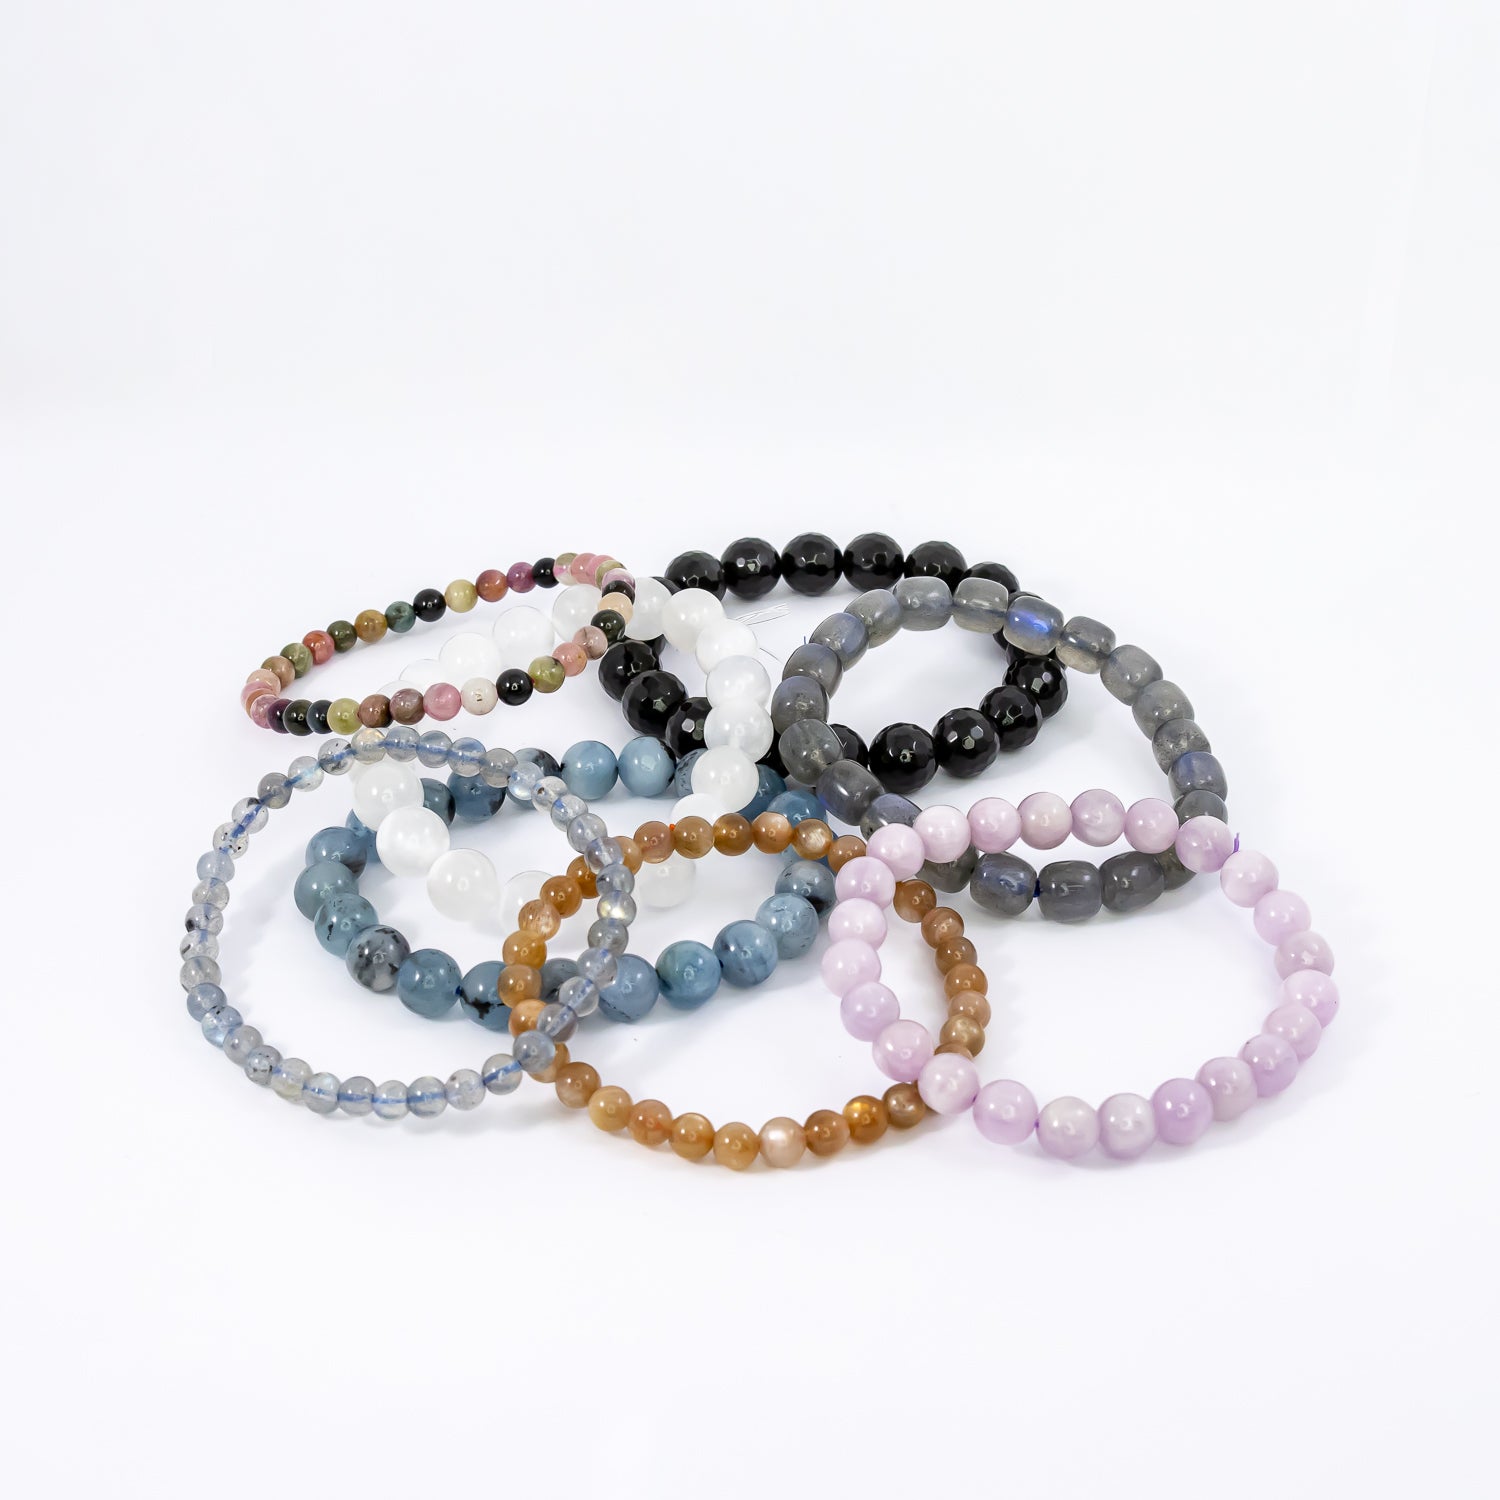 kunzite divine presence bracelet + pocket gem set